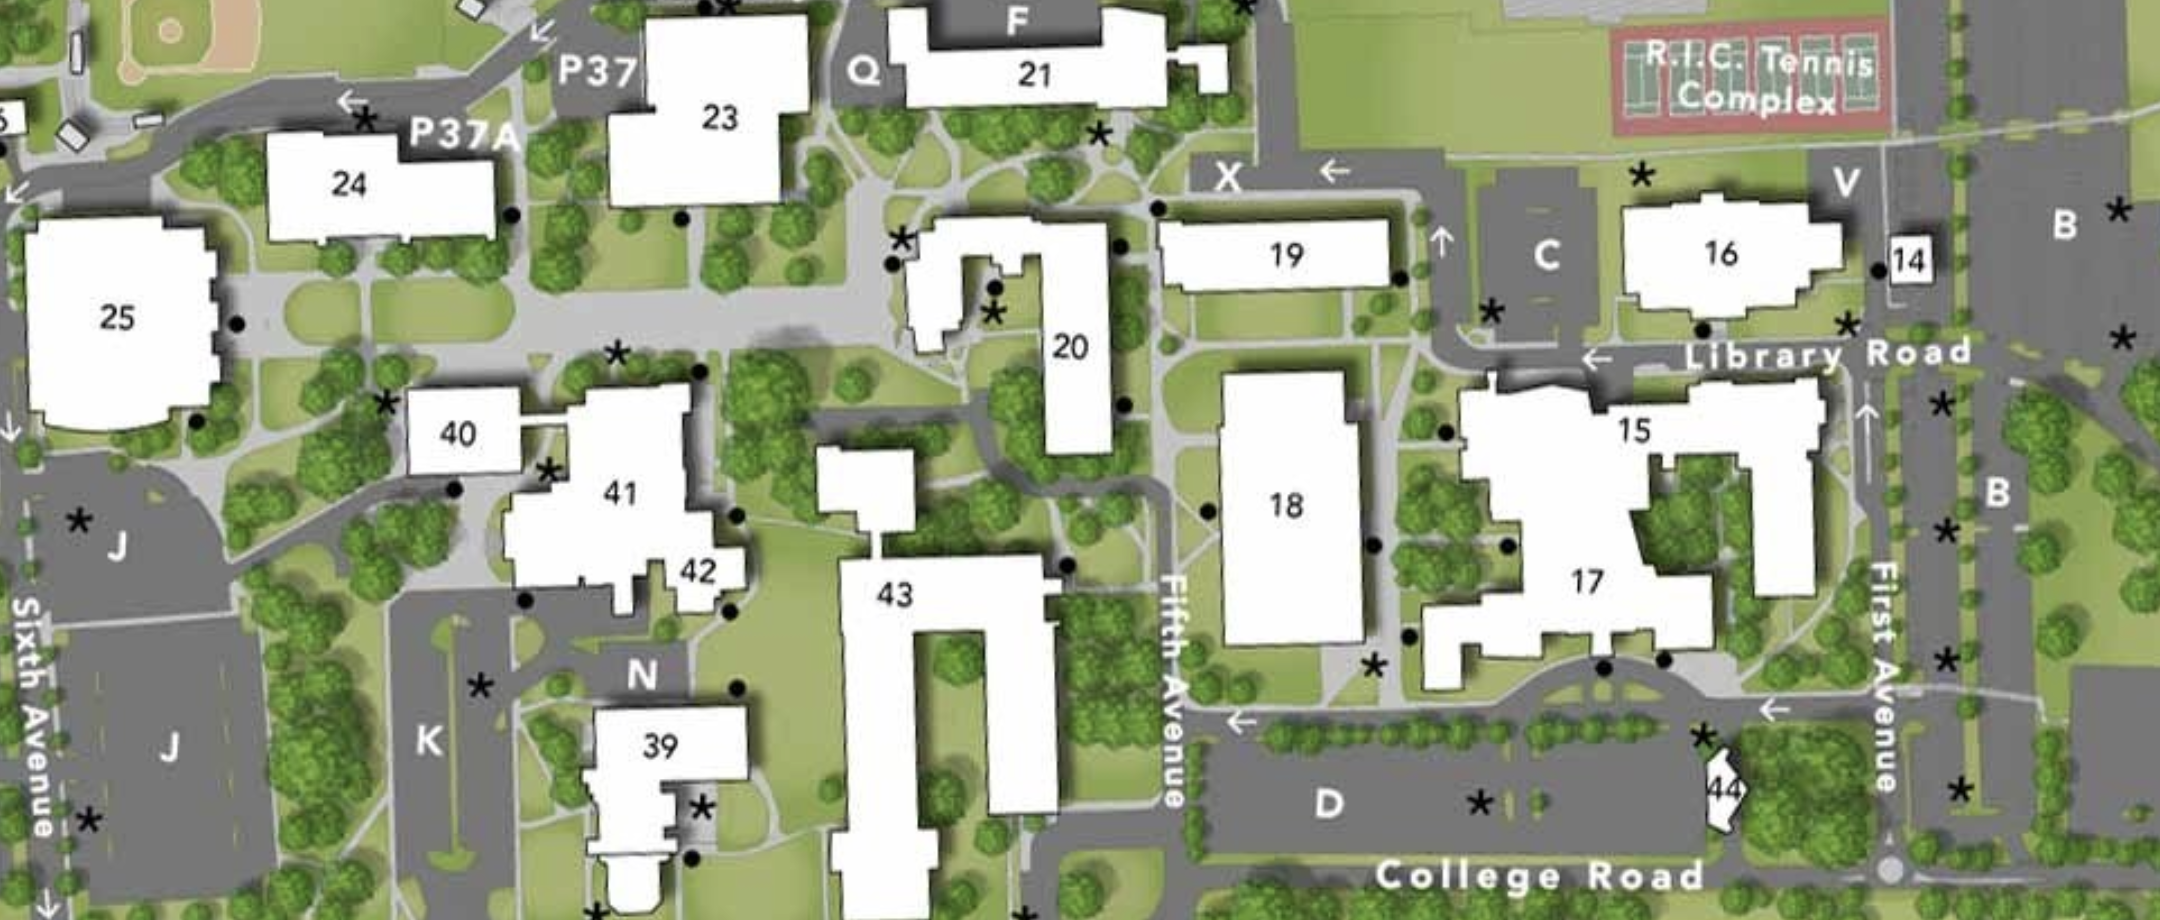 Rhode Island College Campus Map